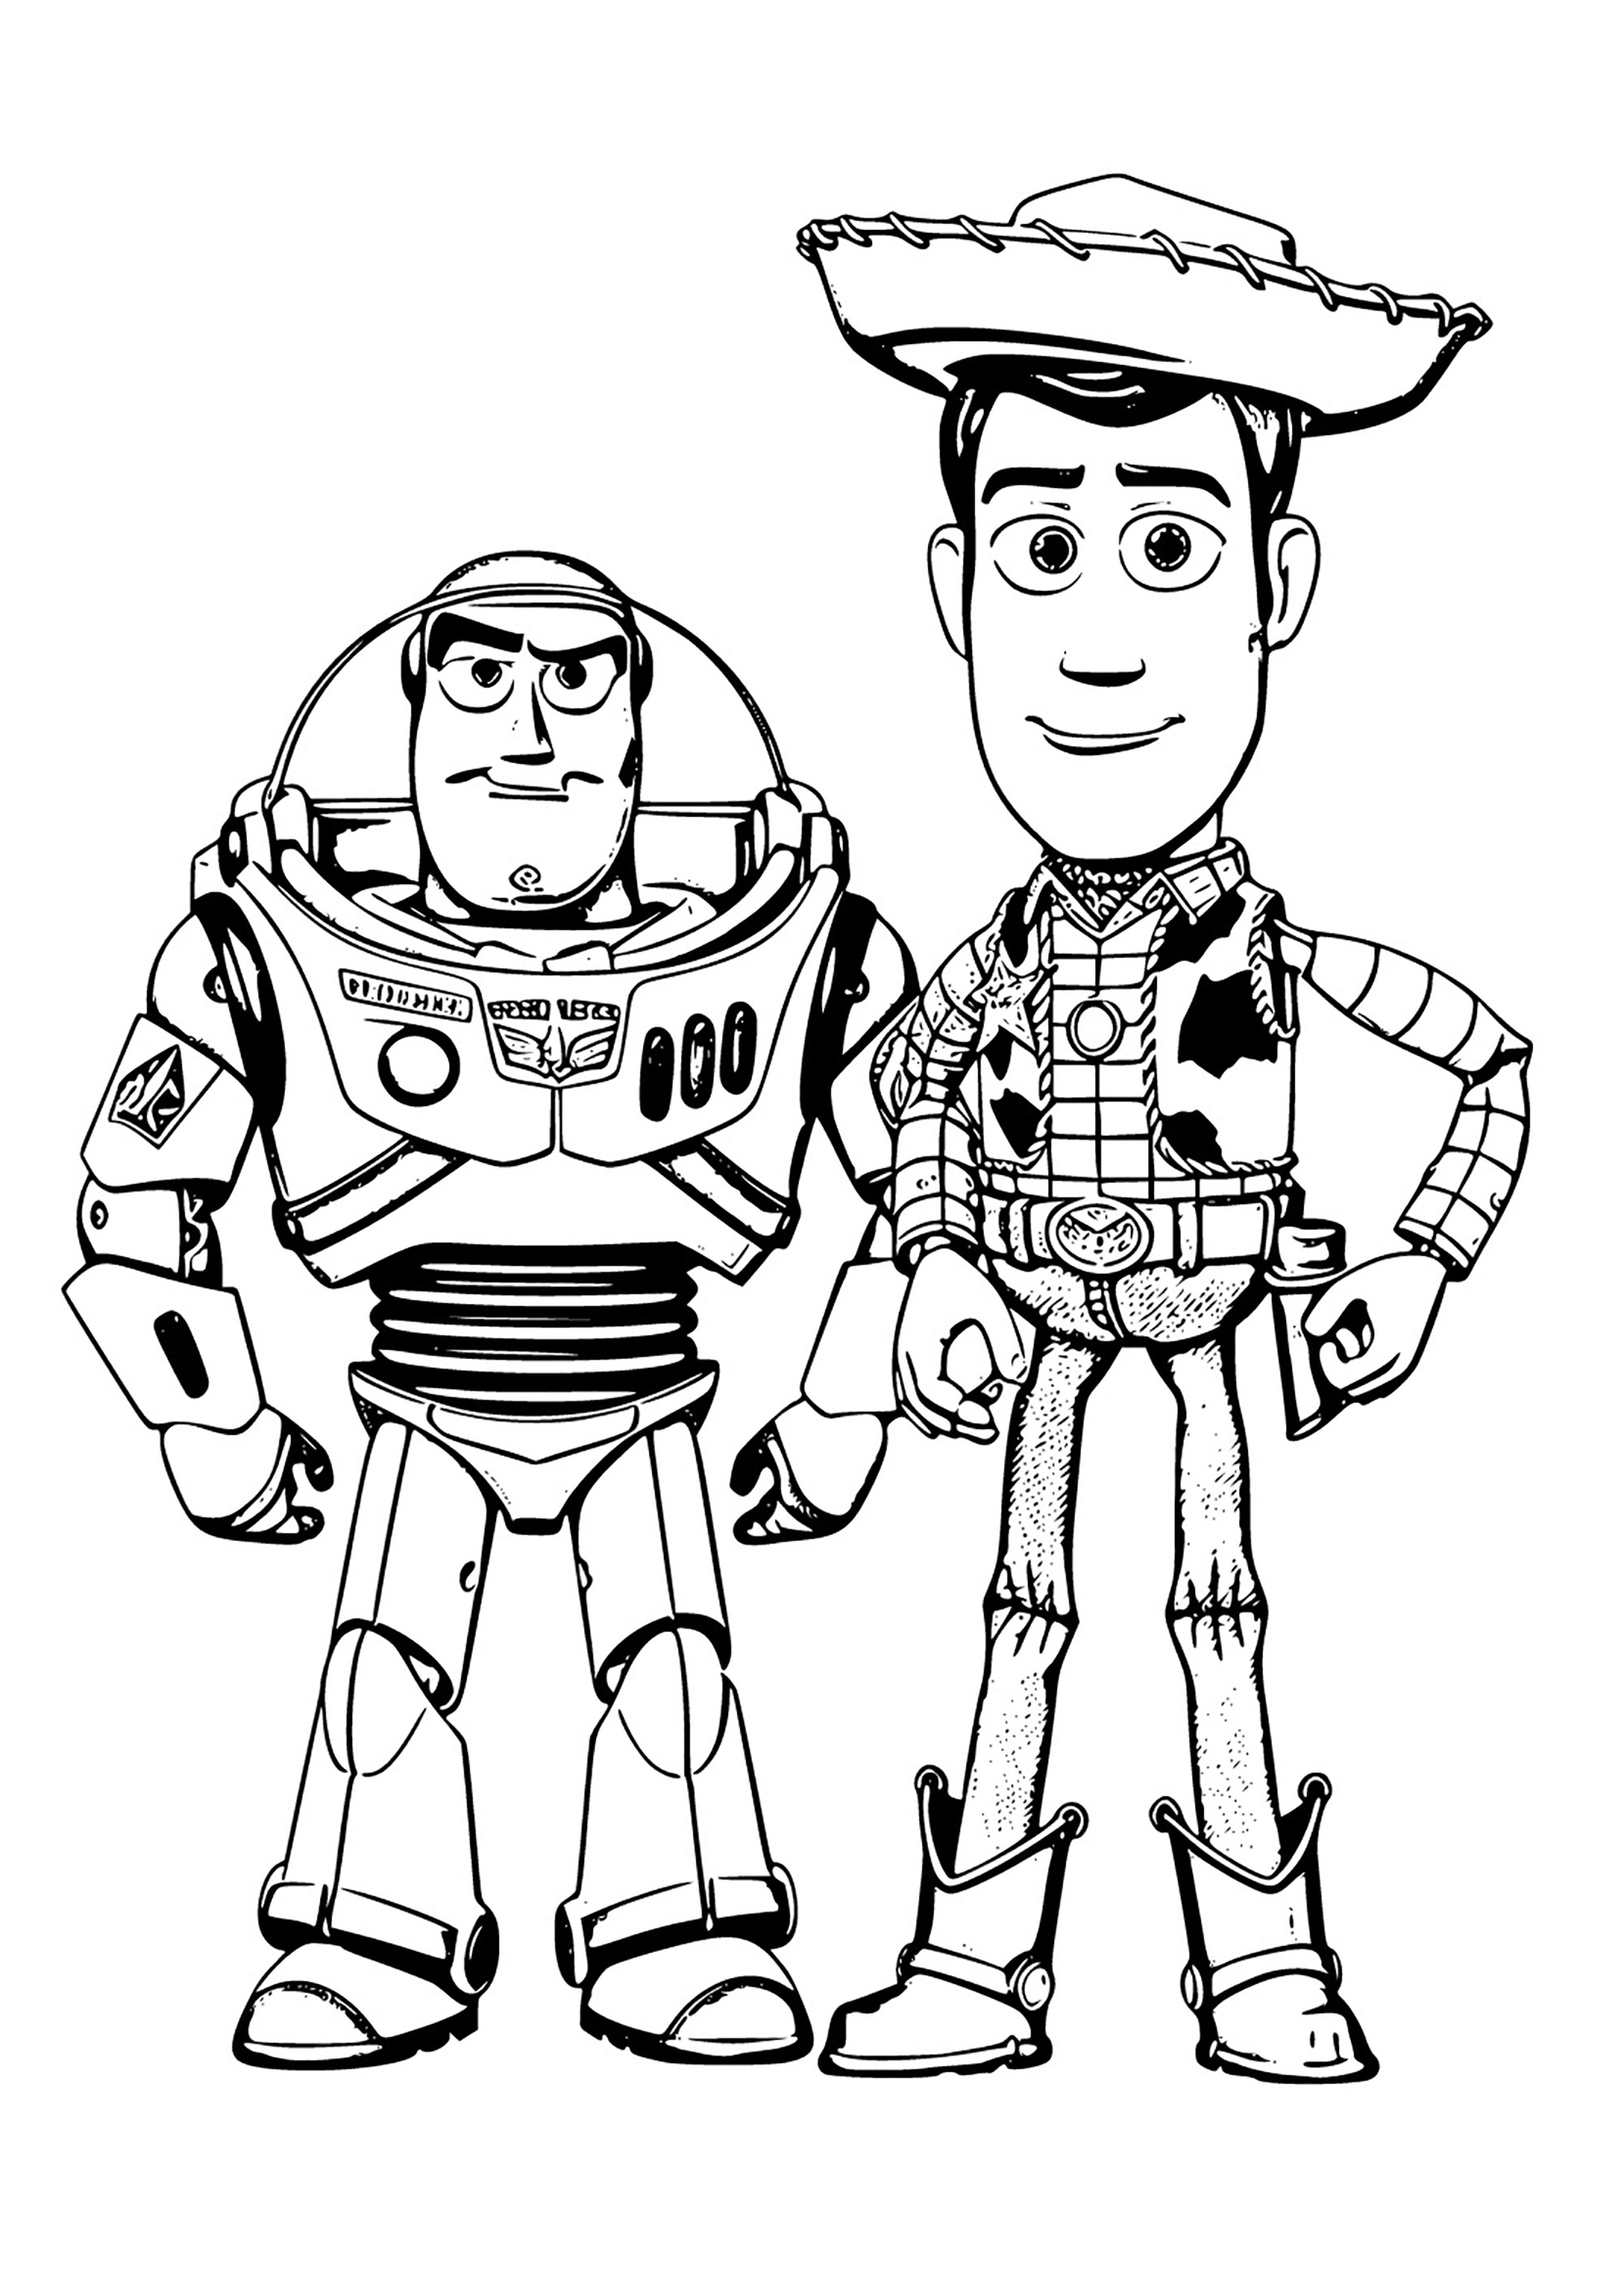 Livro para colorir do Woody e do Buzz. Um design com um estilo muito particular, longe da representação 3D dos filmes